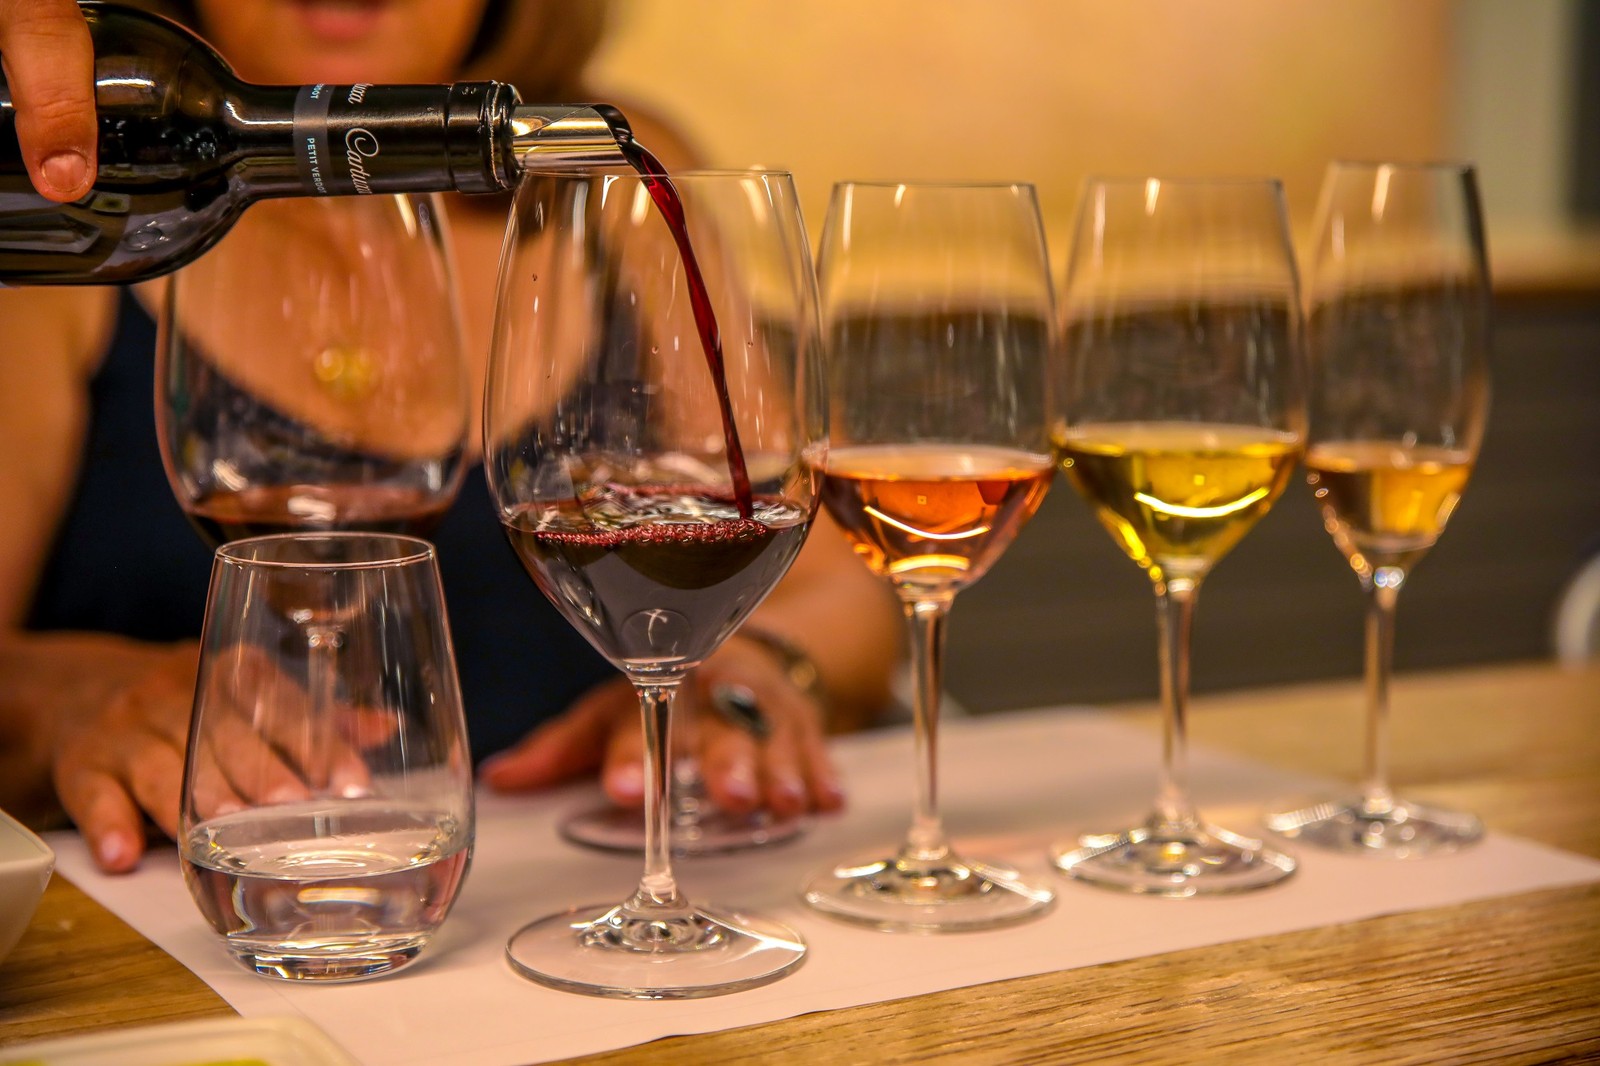 Prova de vinhos na Catuxa: uma das experiências da marca — Foto: Divulgação